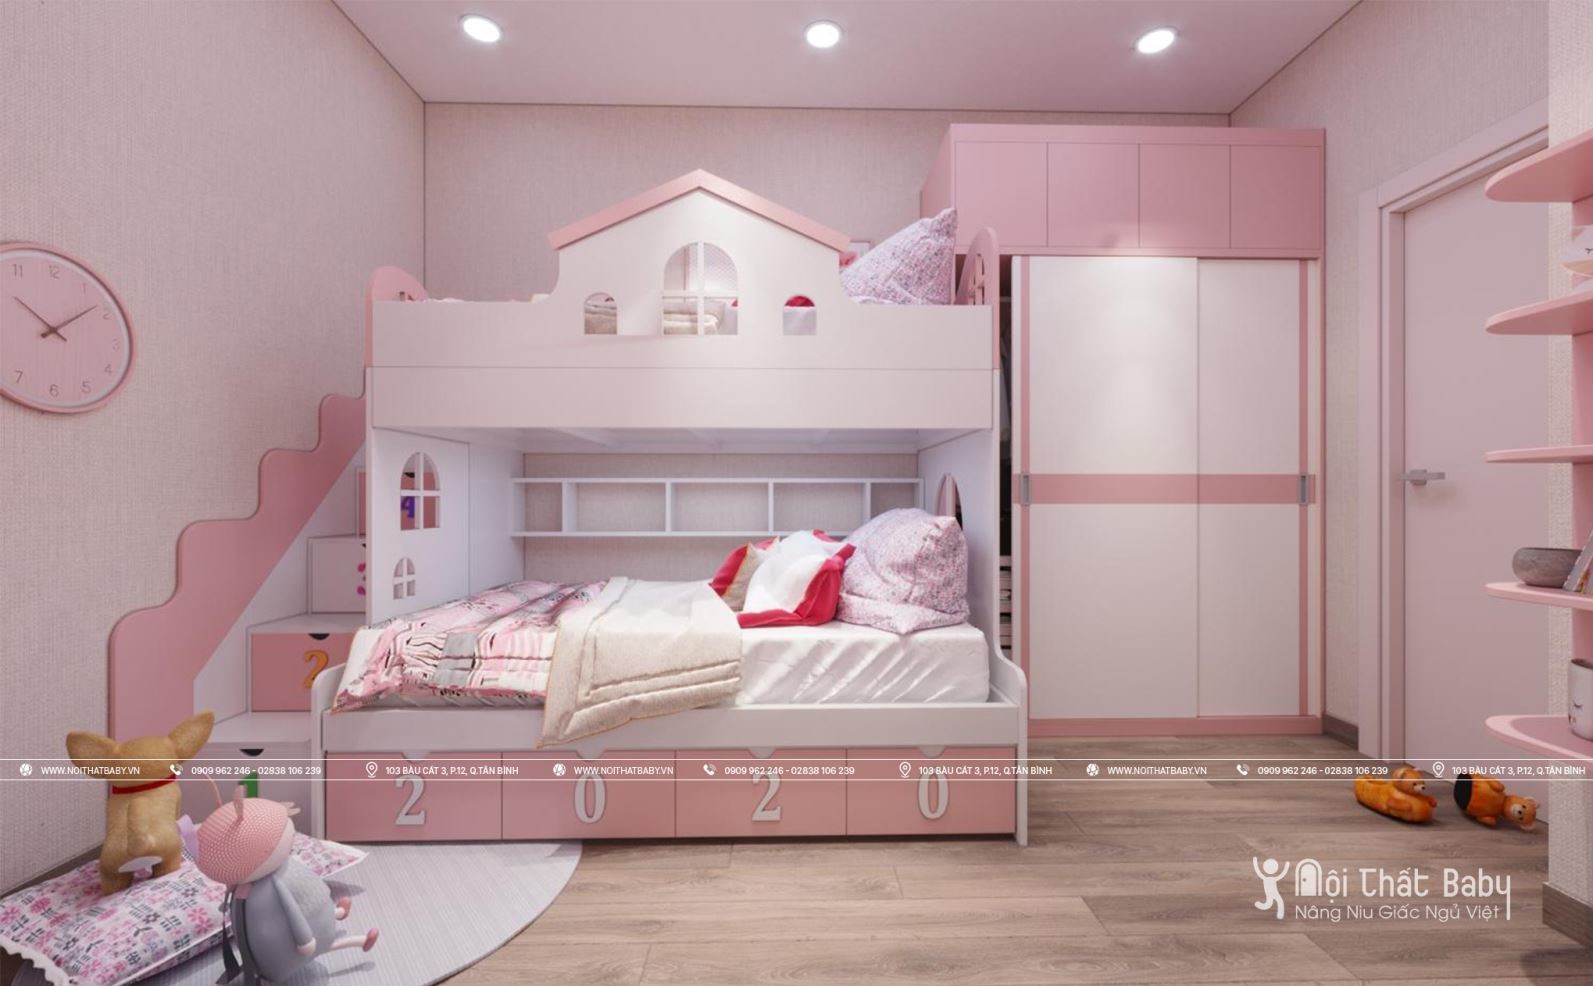 Giường tầng cho bé gái sẽ là sự lựa chọn tuyệt vời cho phòng ngủ nhỏ của bạn. Với thiết kế thông minh, giường tầng không chỉ giúp tiết kiệm không gian mà còn mang đến một không gian sống tiện nghi và đầy màu sắc cho bé yêu của bạn.